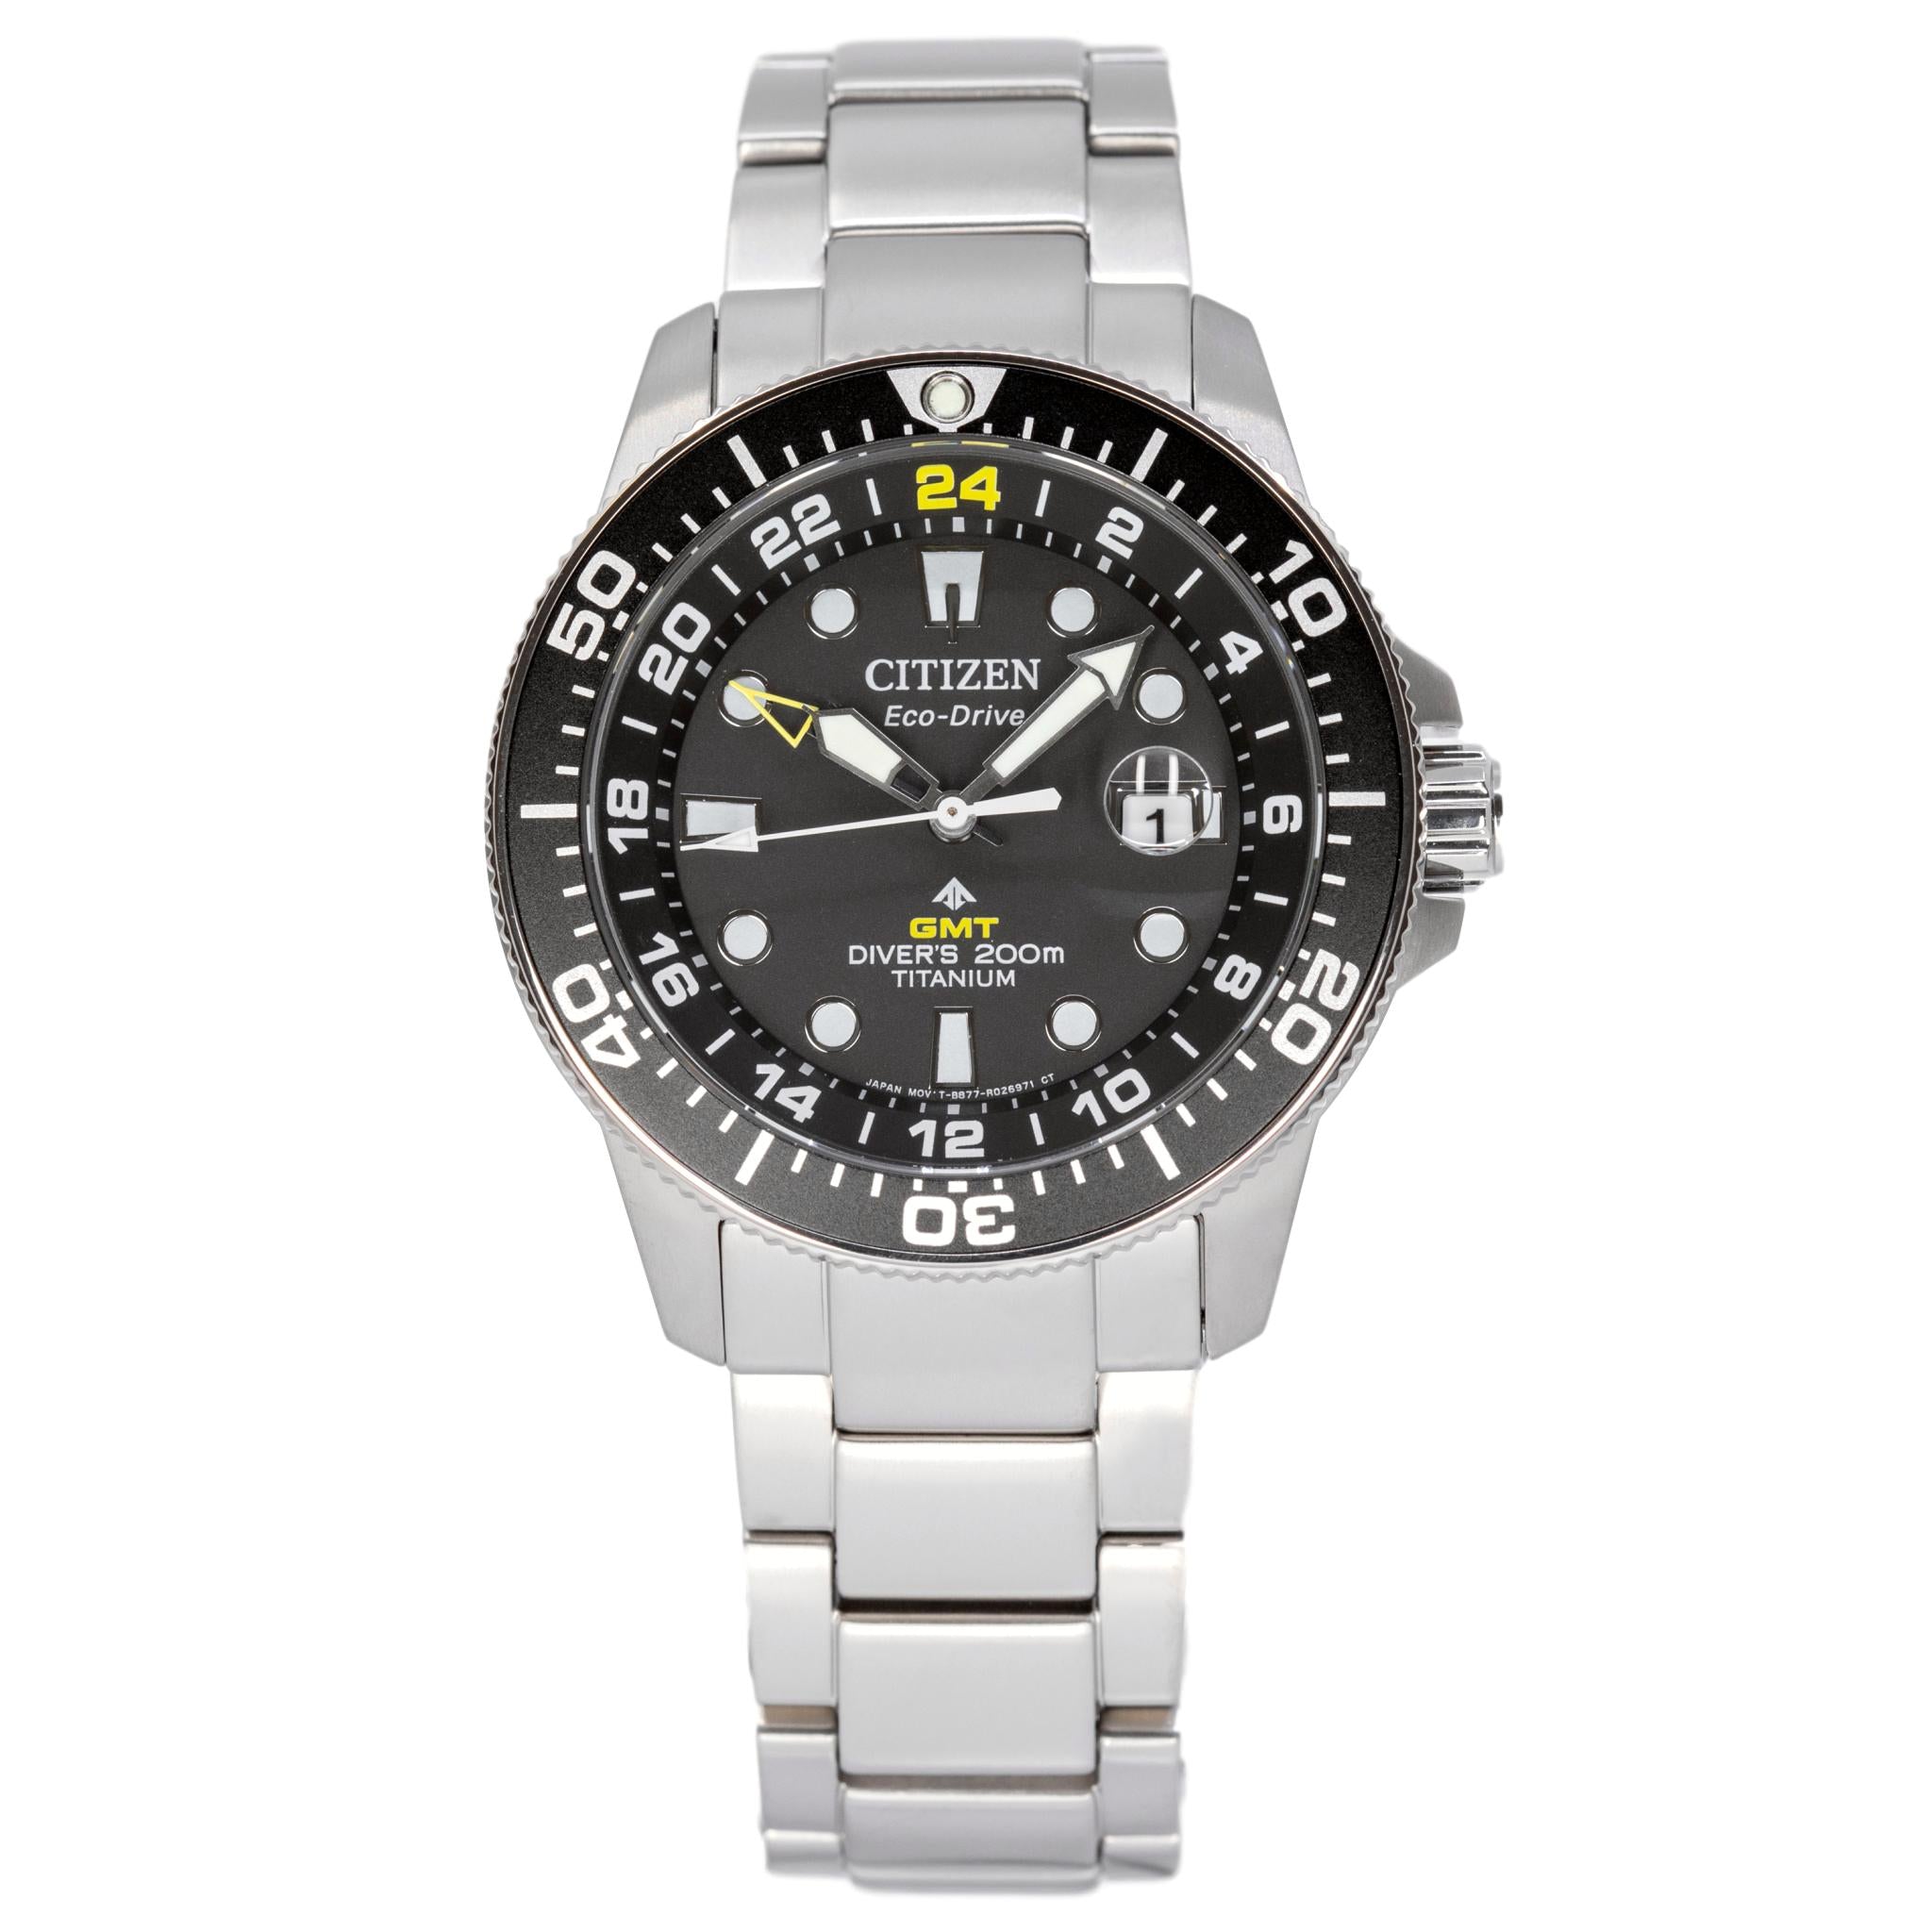 Citizen Men's BJ7110-89E Diver's Eco-Drive GMT Watch